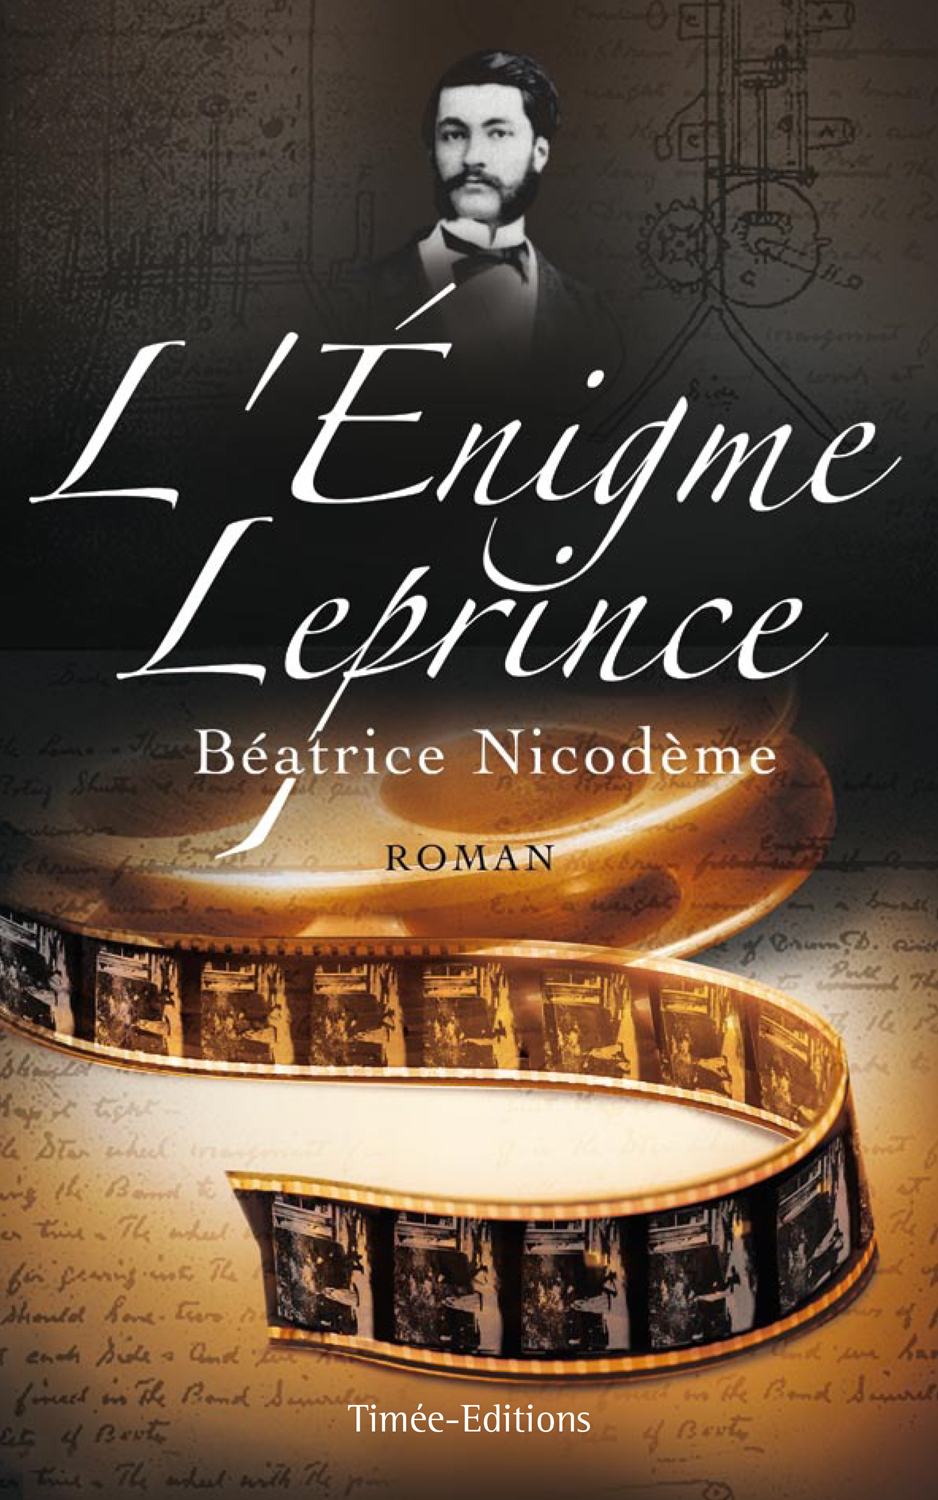 Beatrice Nicodeme autrice couverture du roman L enigme Leprince